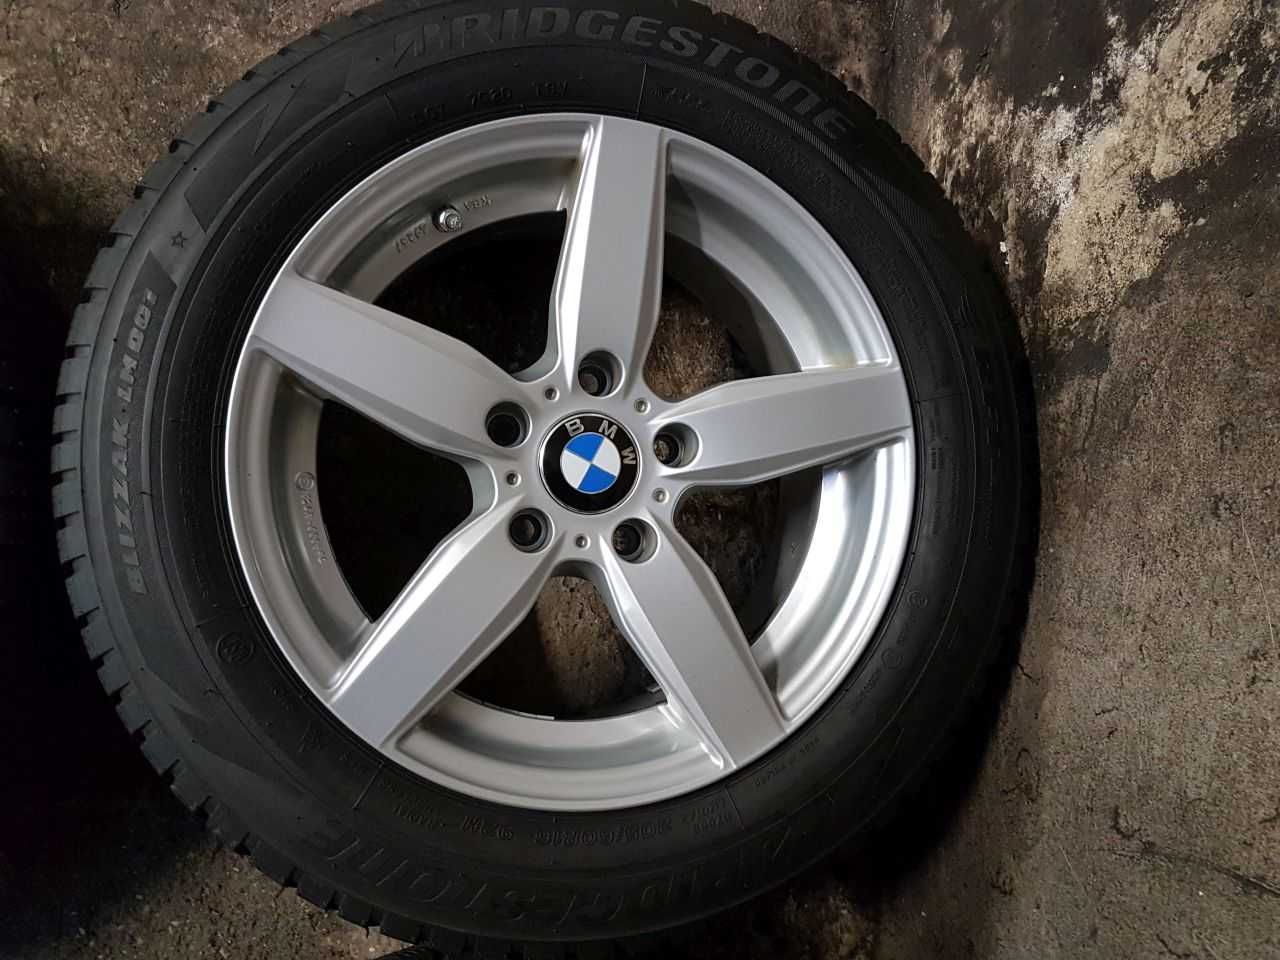 Felgi alu BMW R16 5x120 opony zimowe Bridgestone 205/60R16 7,5mm 2019r